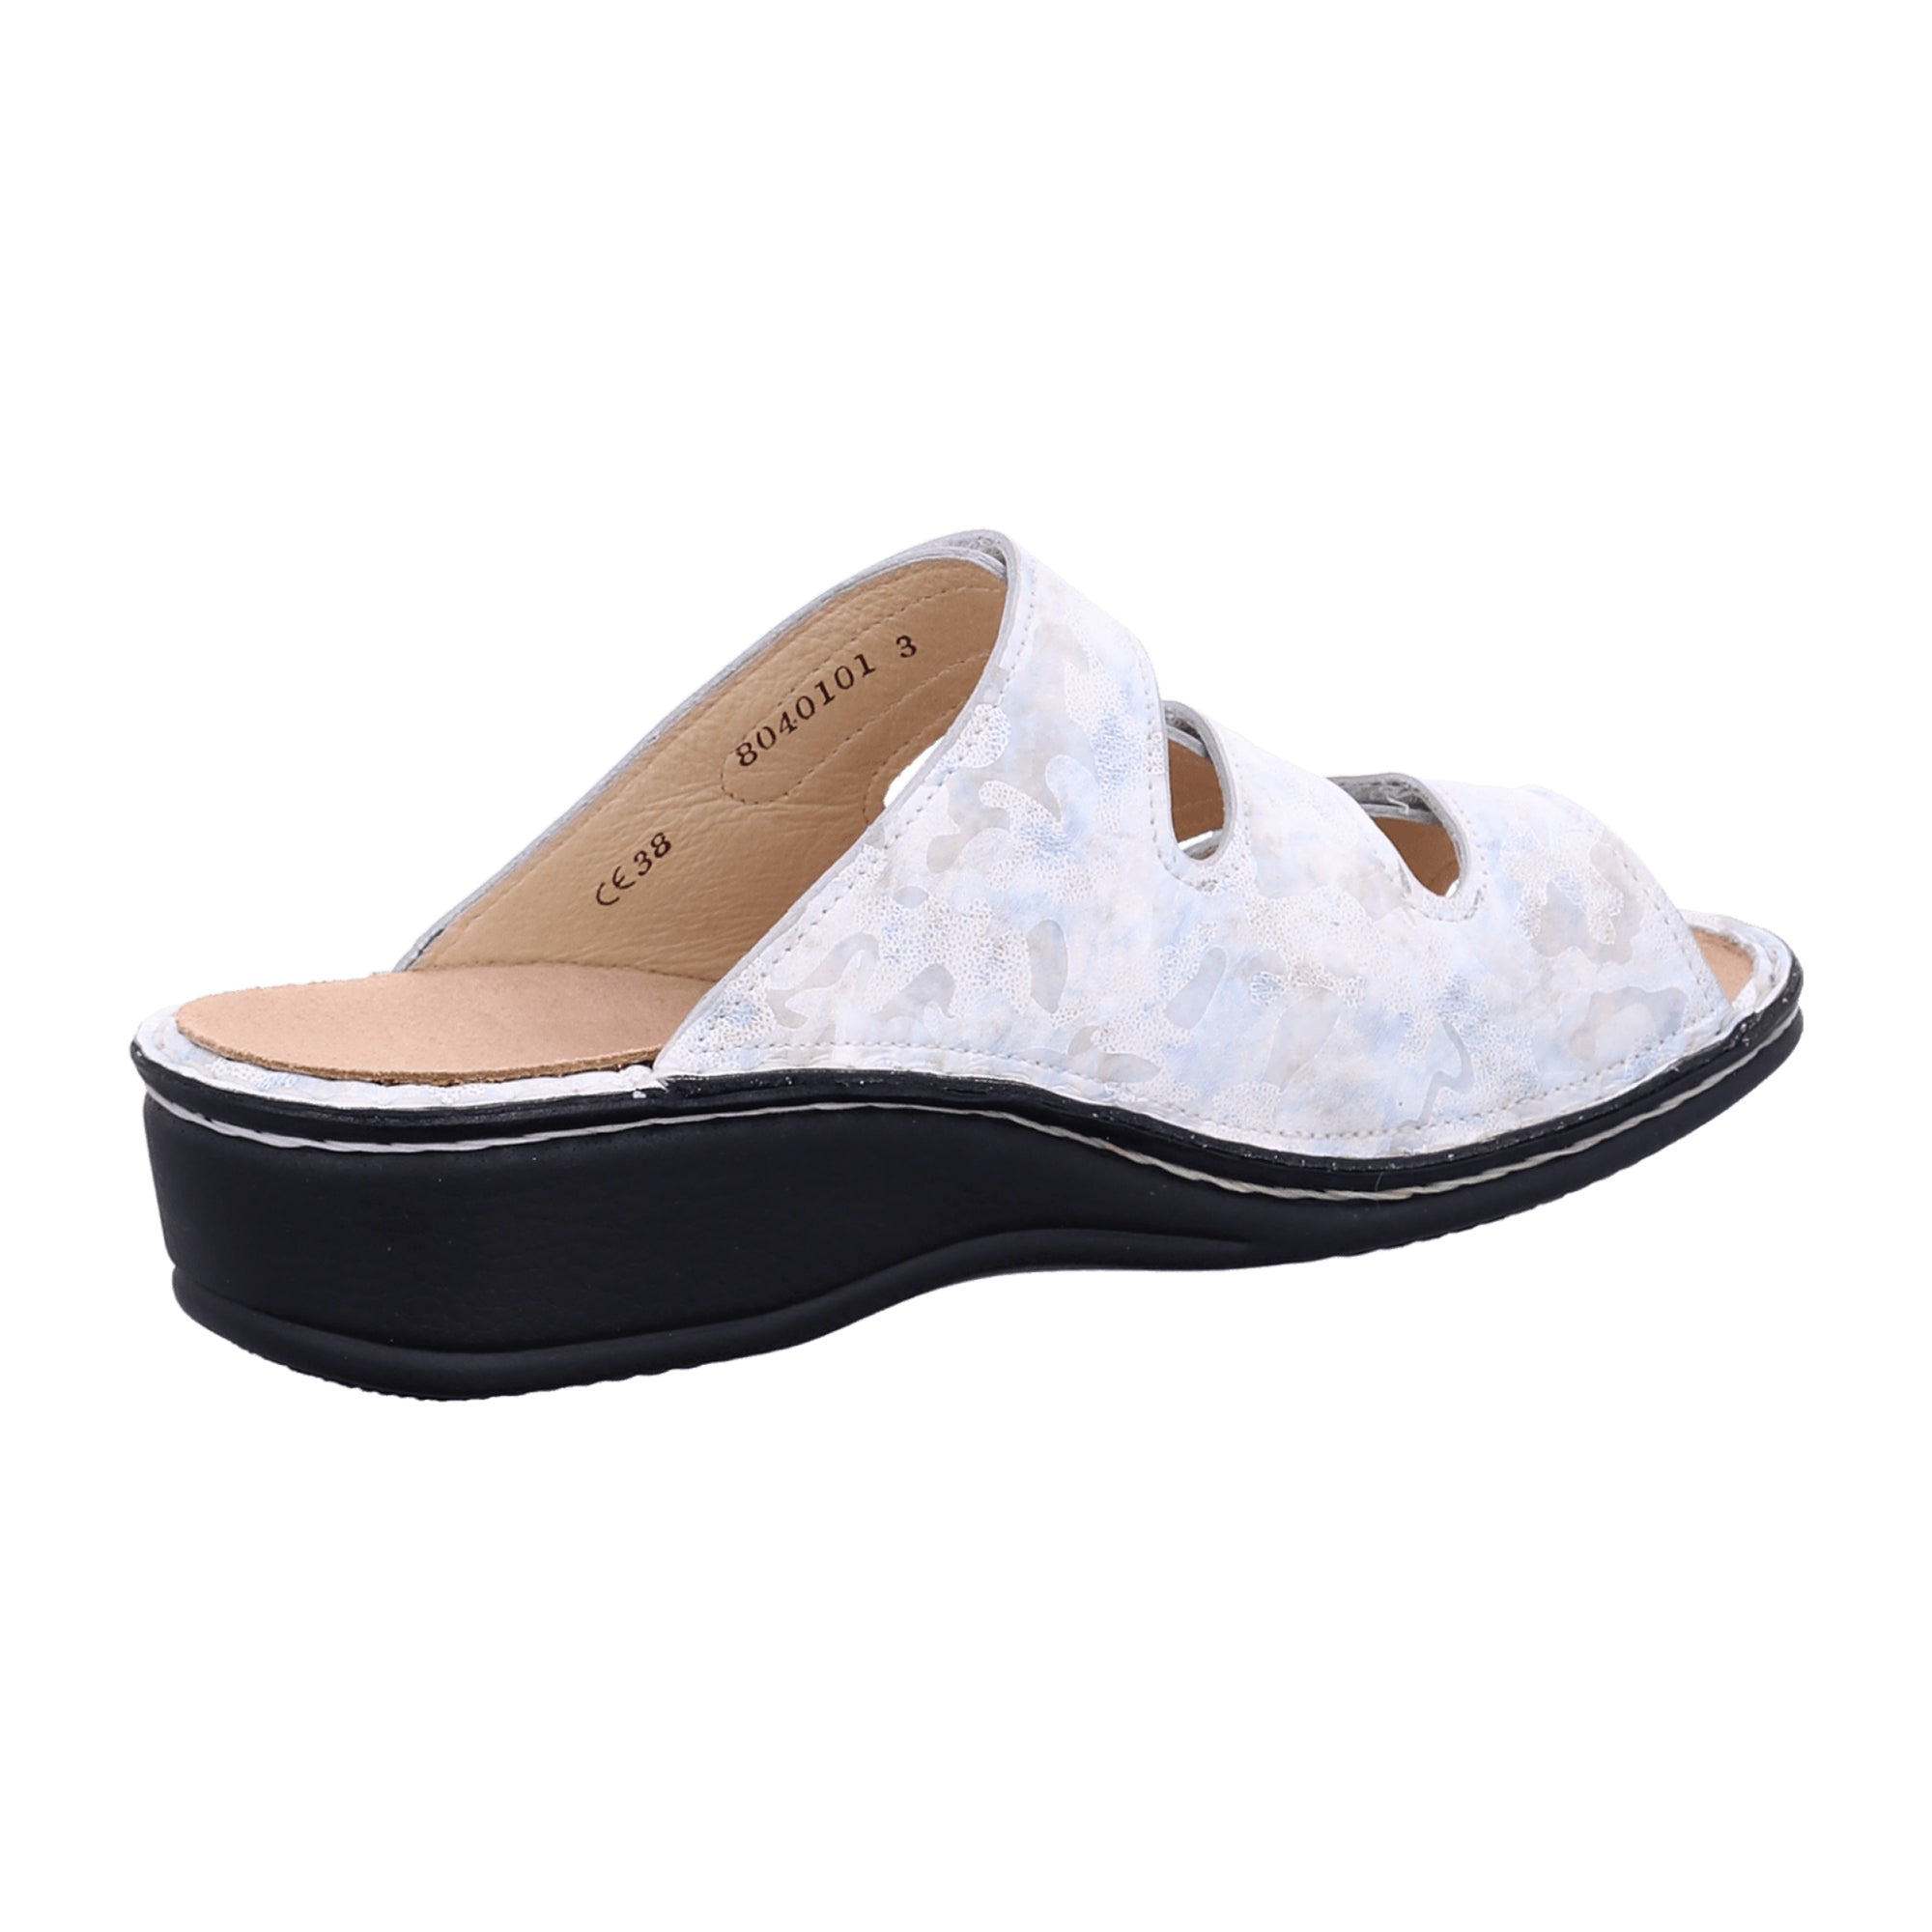 Finn Comfort Pisa Women's Sandals - Elegant White